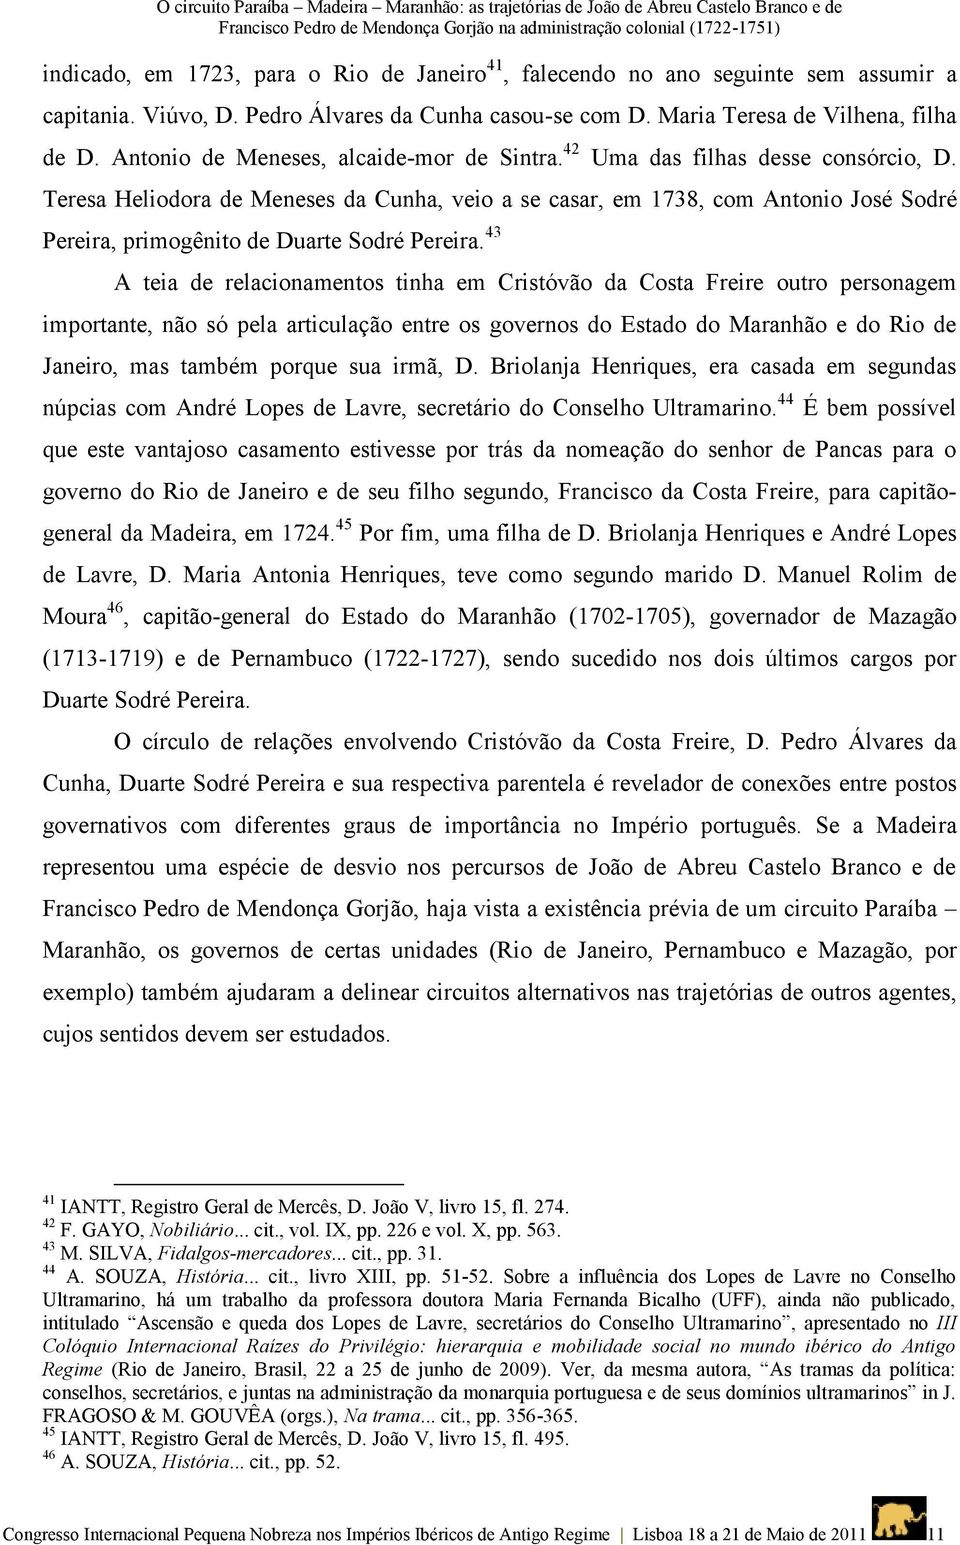 42 Uma das filhas desse consórcio, D. Teresa Heliodora de Meneses da Cunha, veio a se casar, em 1738, com Antonio José Sodré Pereira, primogênito de Duarte Sodré Pereira.